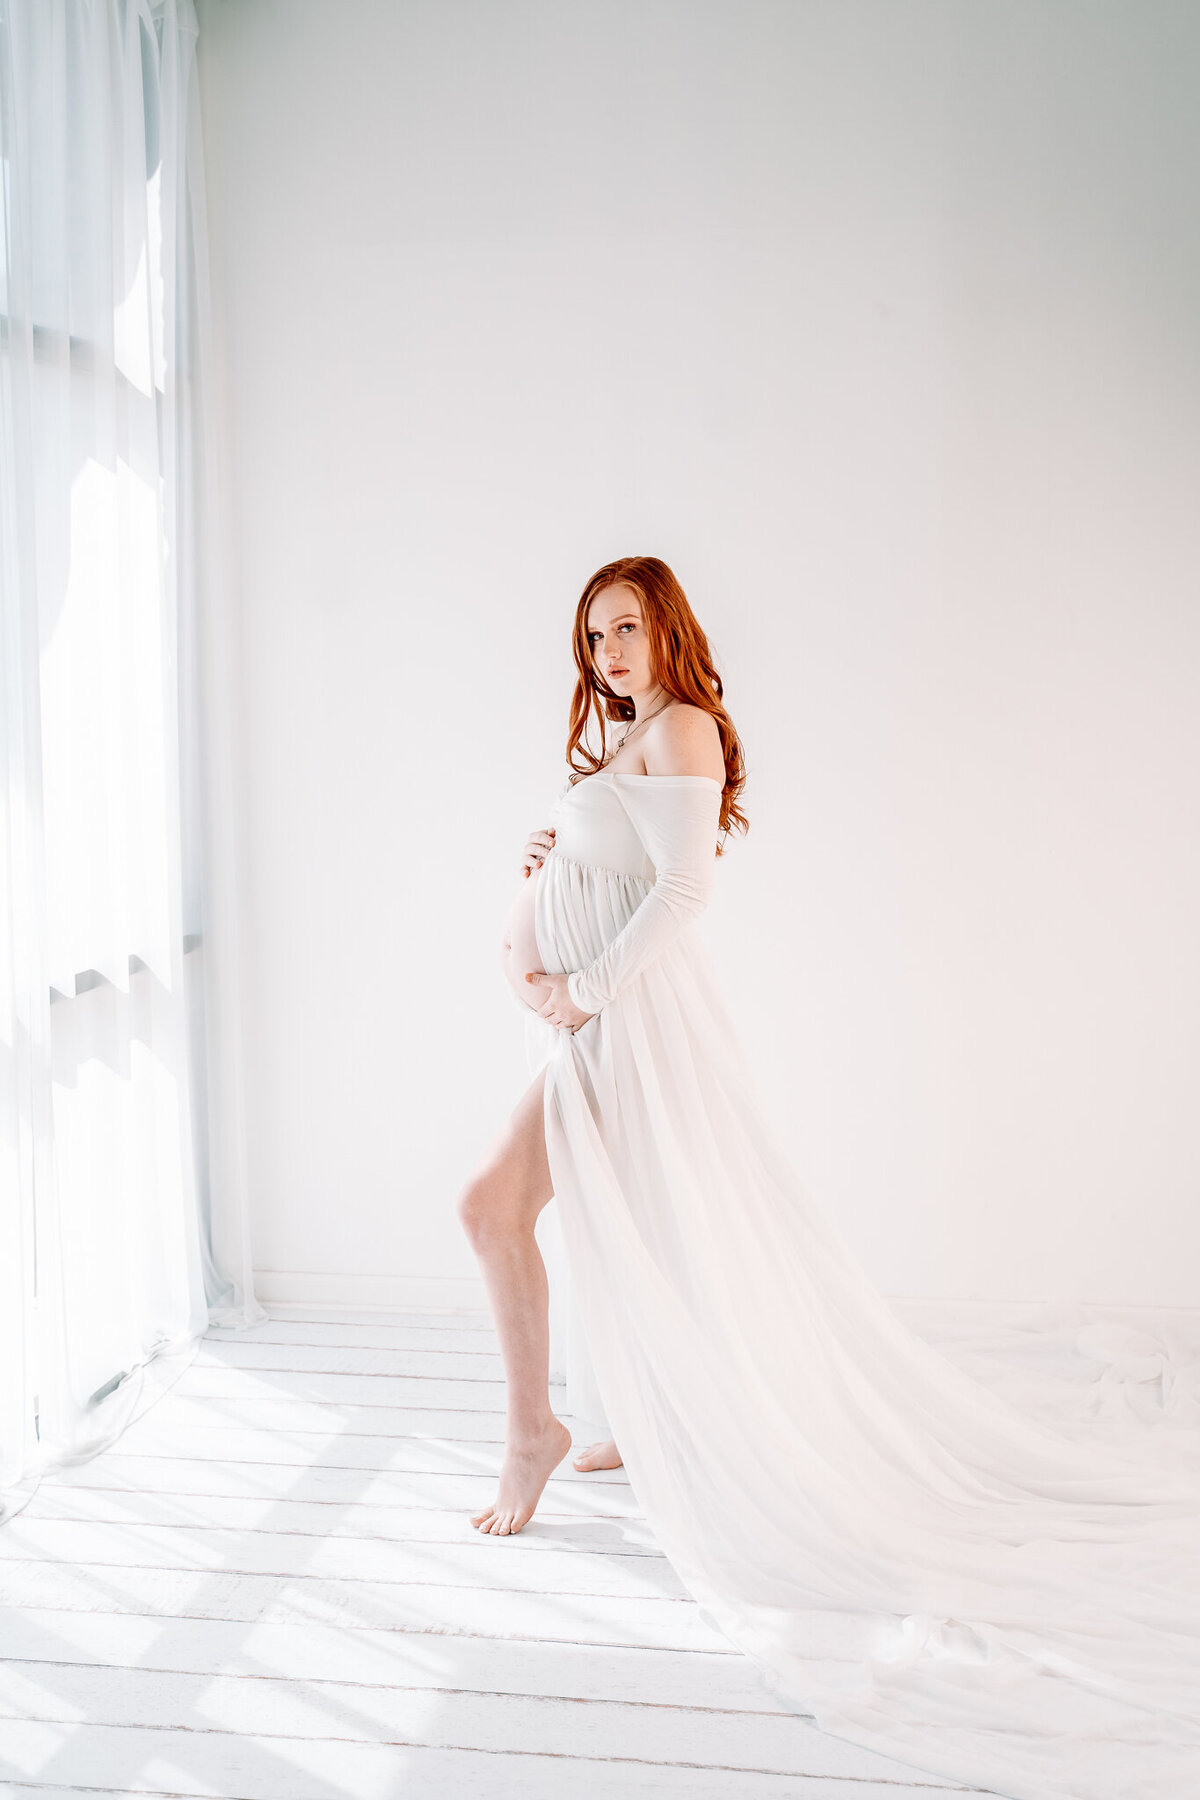 Peoria-Maternity-Studio-Photographer-0